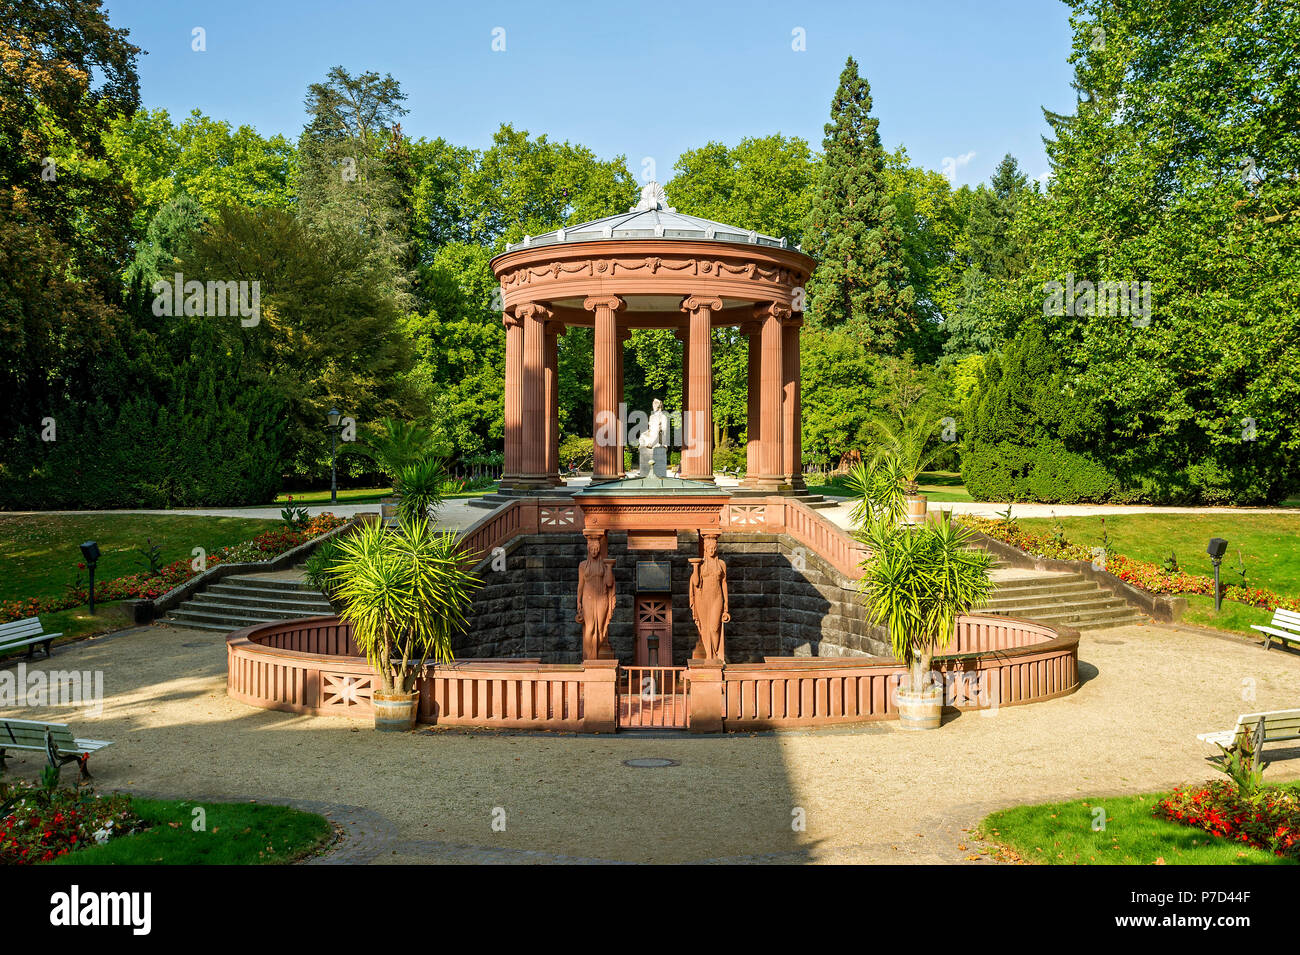 Elisabethenbrunnen, spa gardens Bad Homburg vor der Höhe, Hesse, Germany Stock Photo